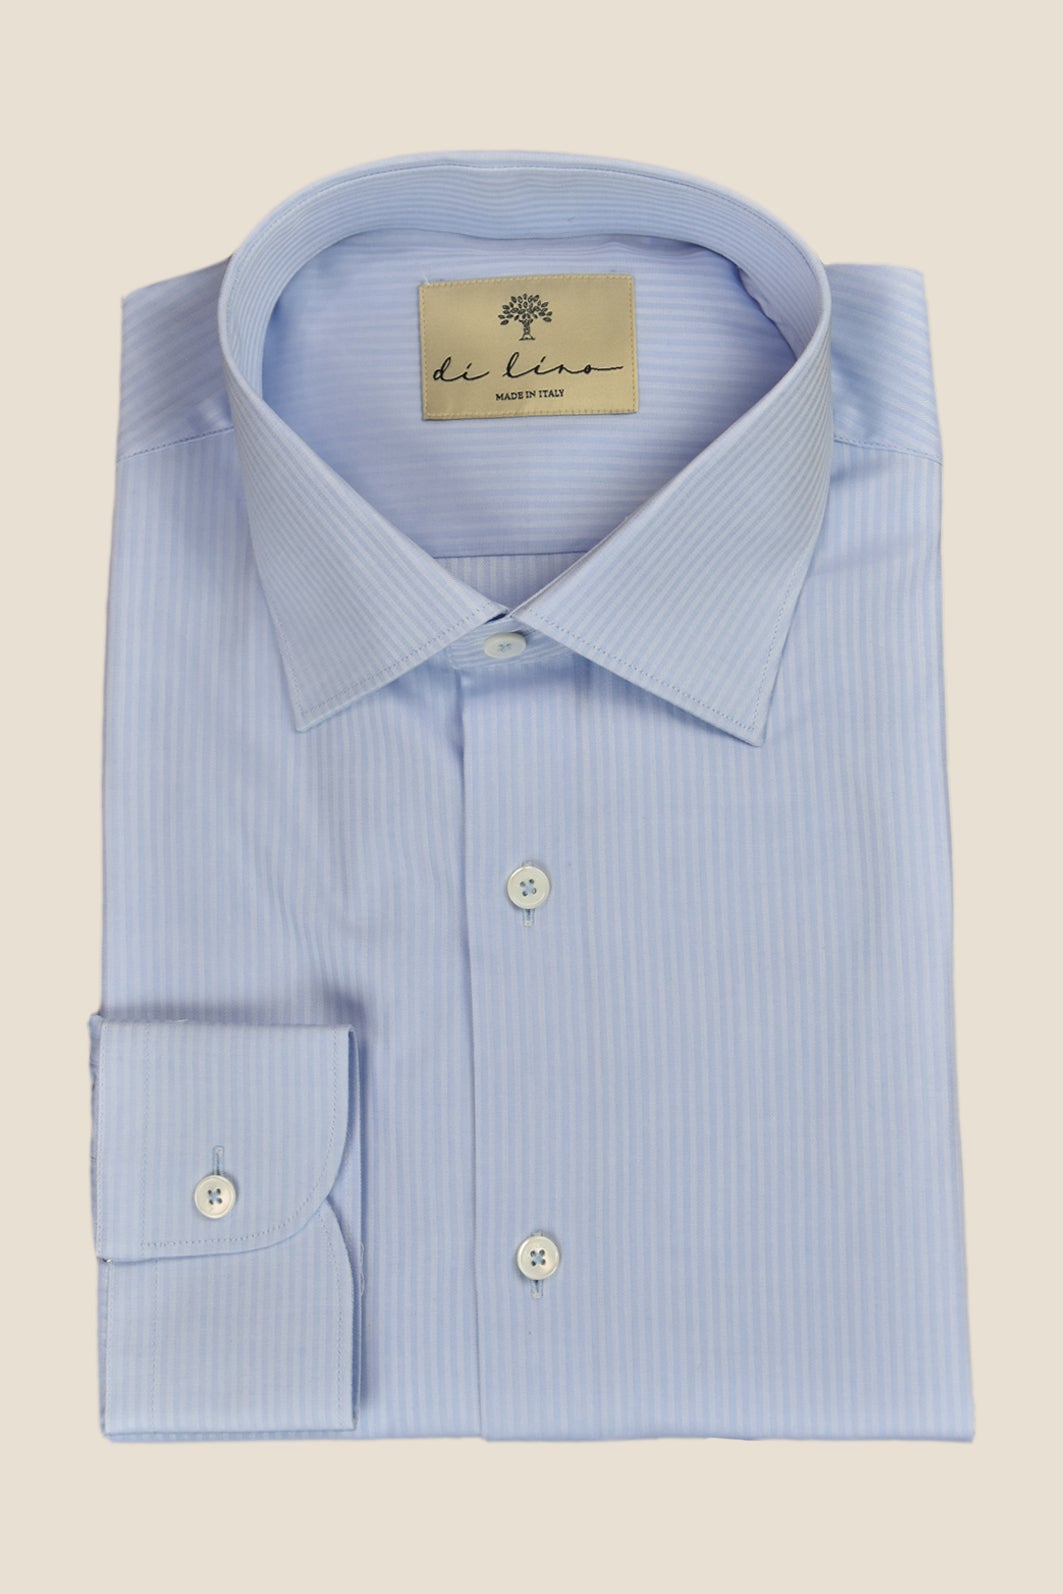 Hellblaues Hemd aus Bio - Baumwolle mit klassischem Haifischkragen, leichten Streifen und lässigem Schnitt - Made to order